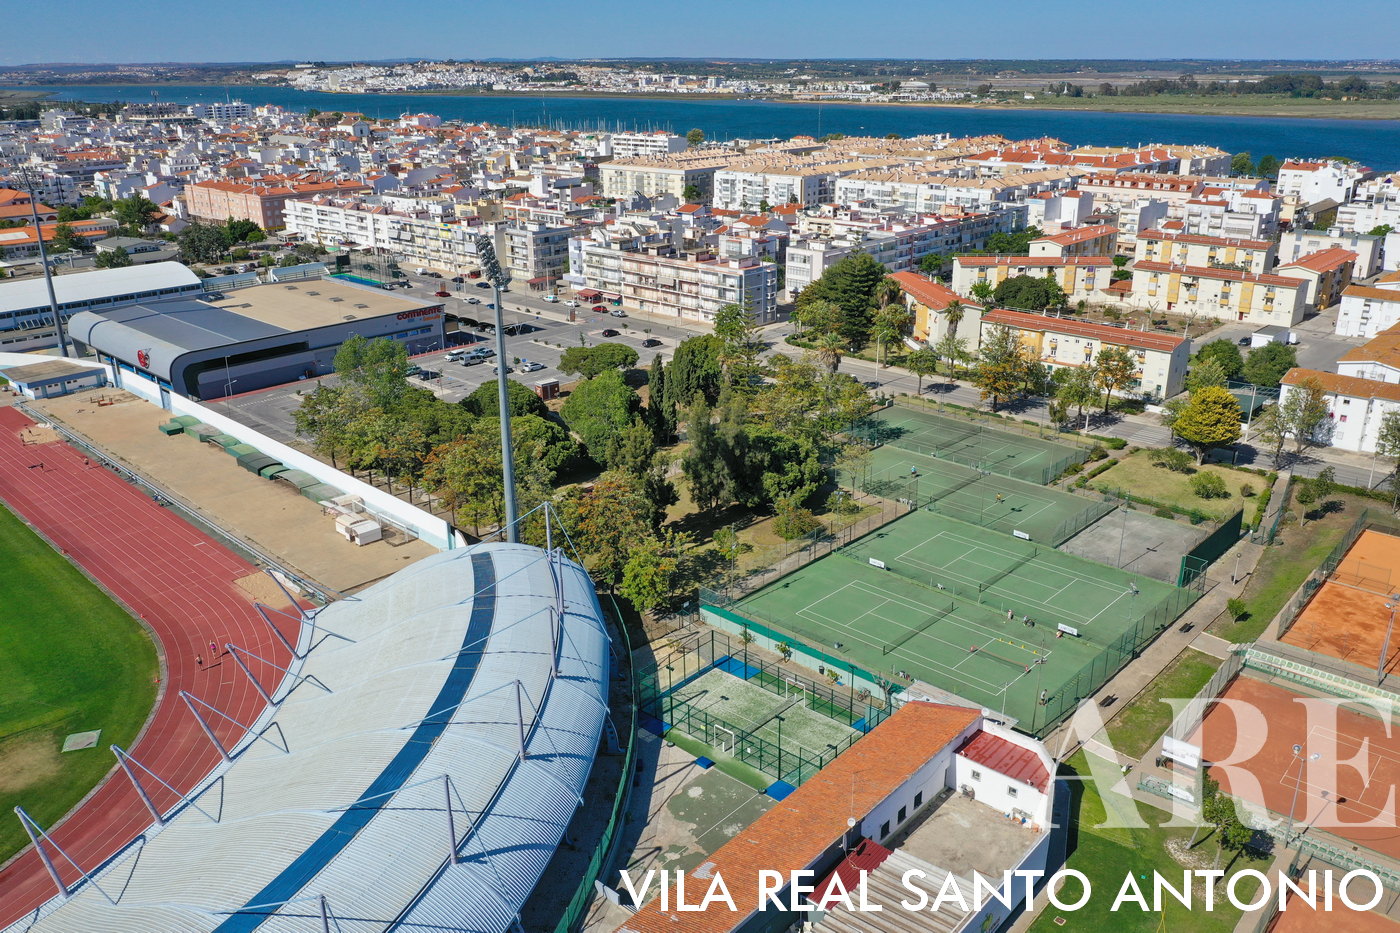 Vista panorámica de Vila Real de Santo António desde la zona deportiva